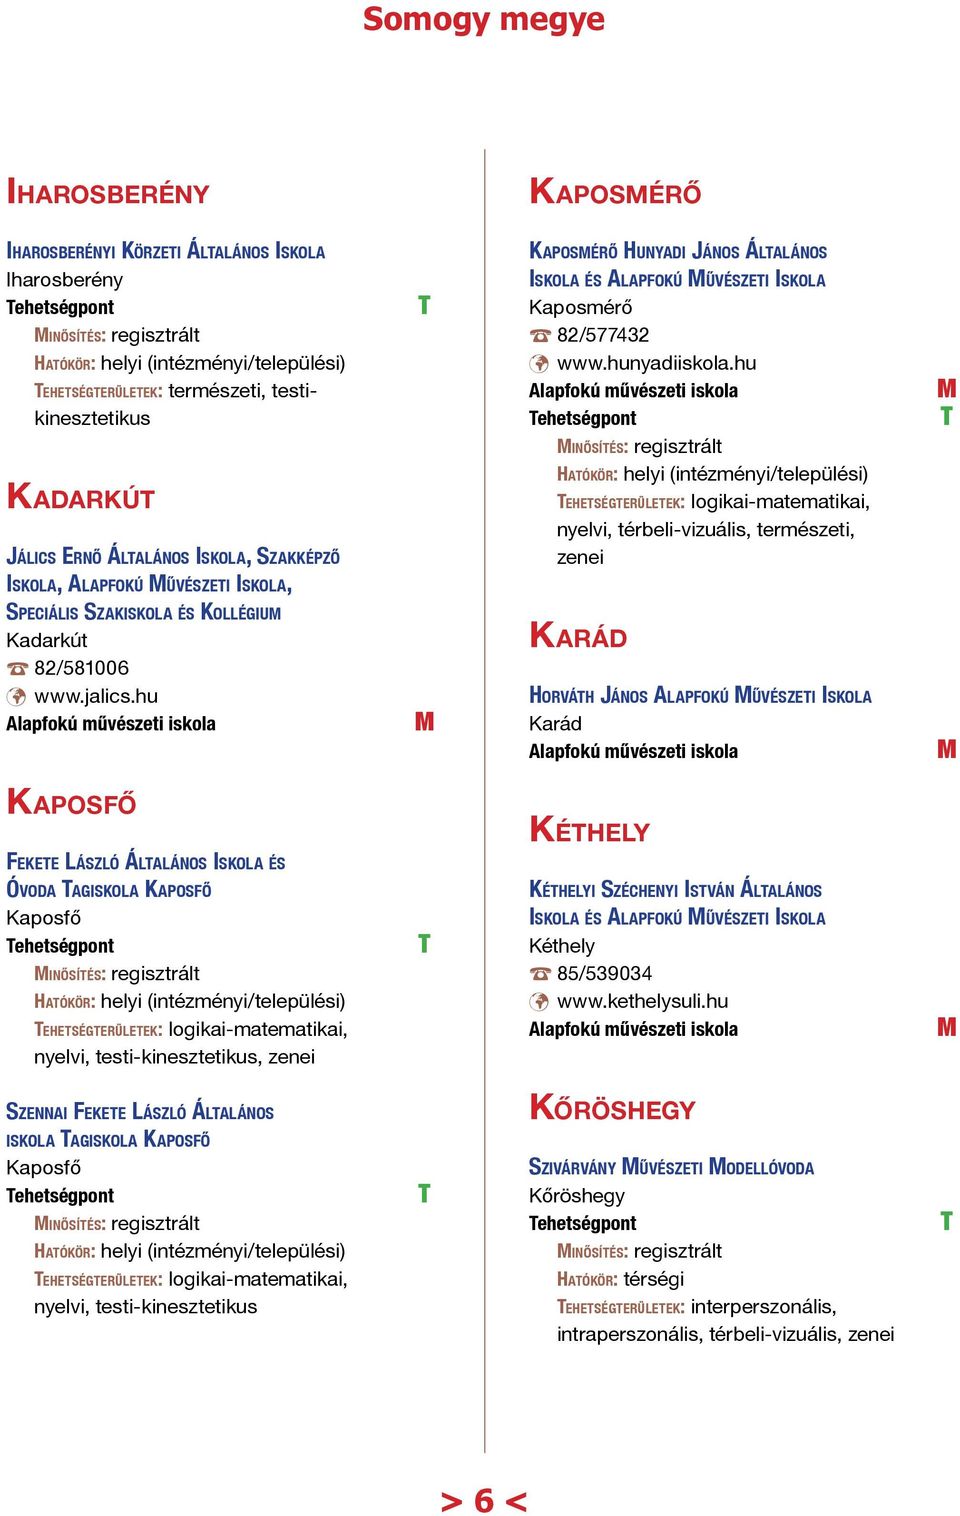 hu ehetségpont inősítés: regisztrált ehetségterületek: logikai-matematikai, nyelvi, térbeli-vizuális, természeti, zenei peciális zakiskola és Kollégium Kadarkút 82/581006 www.jalics.